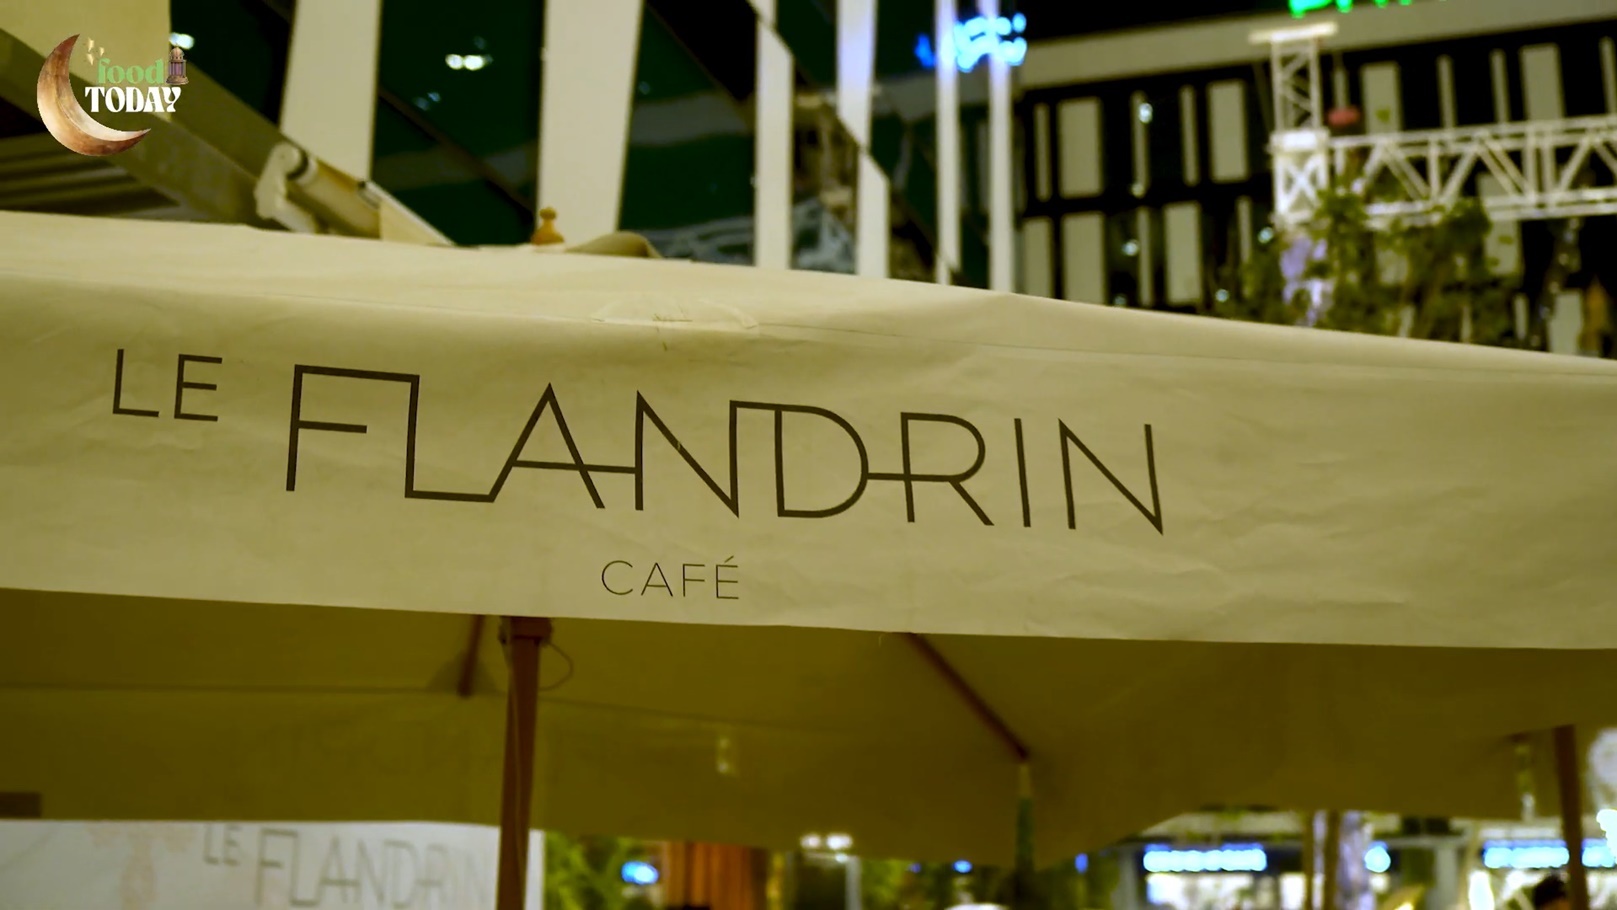 Le Flandrin Cafe